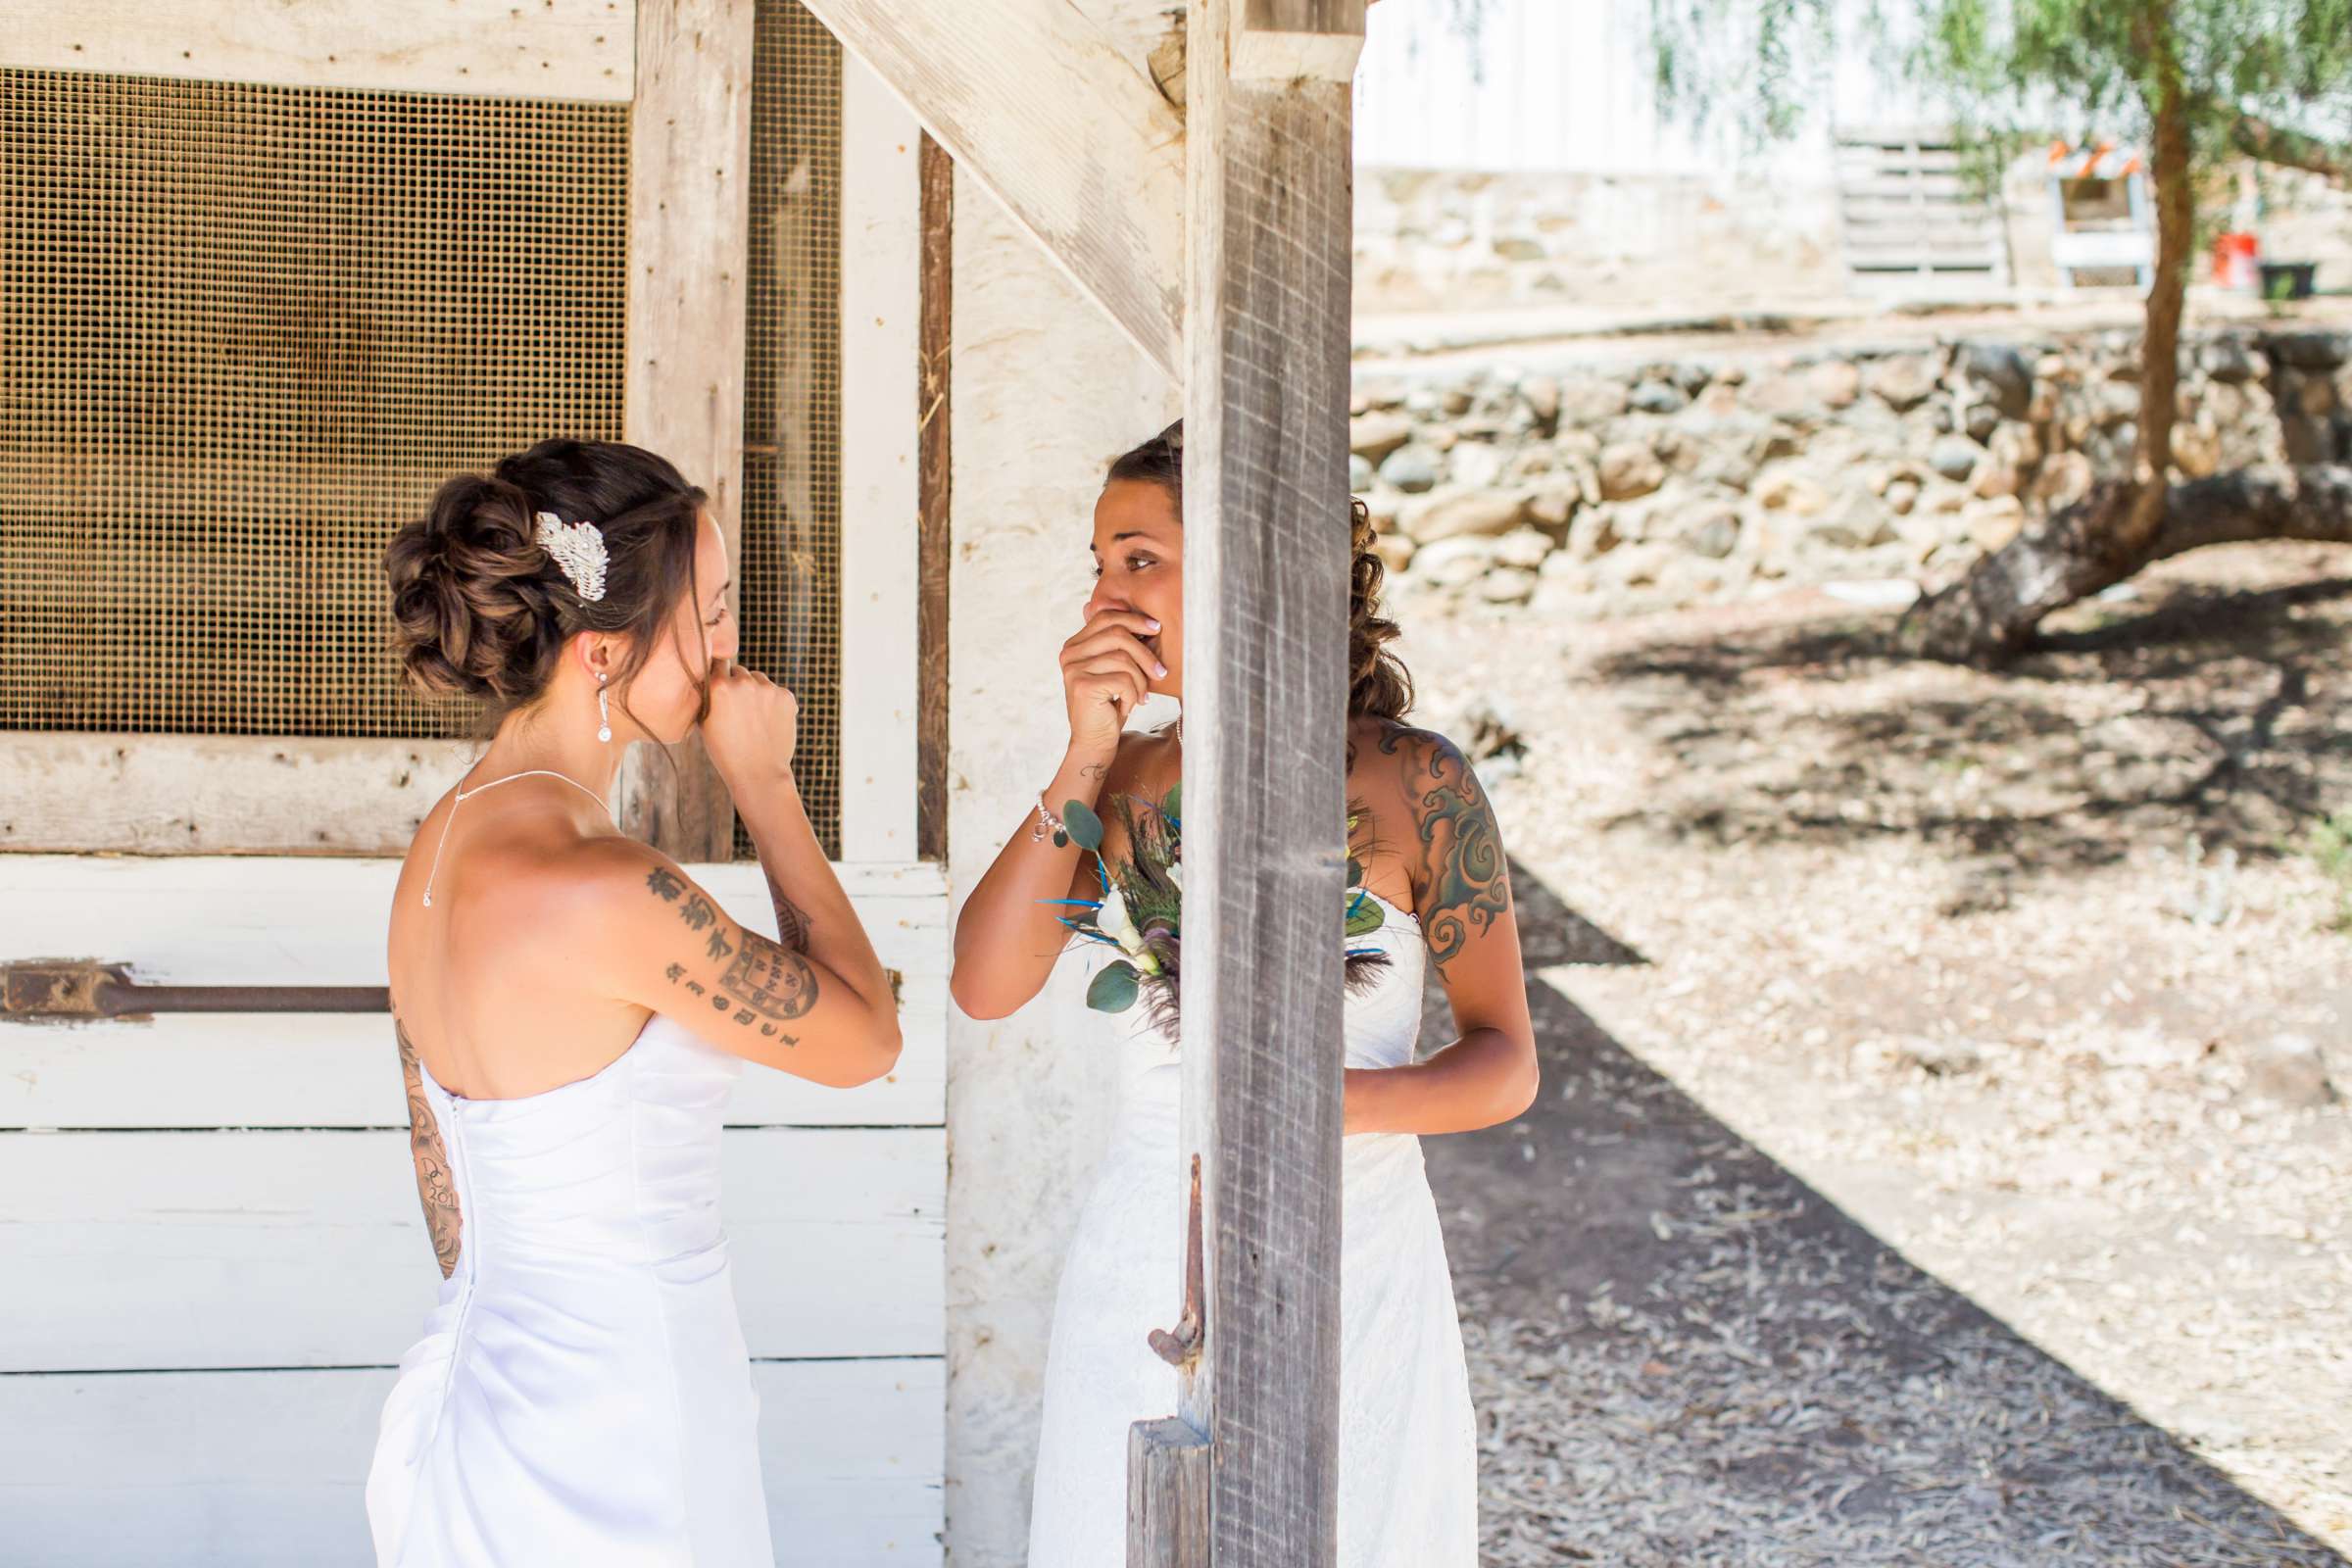 Leo Carrillo Ranch Wedding, Nina (Angenina) and Ligia Wedding Photo #248625 by True Photography